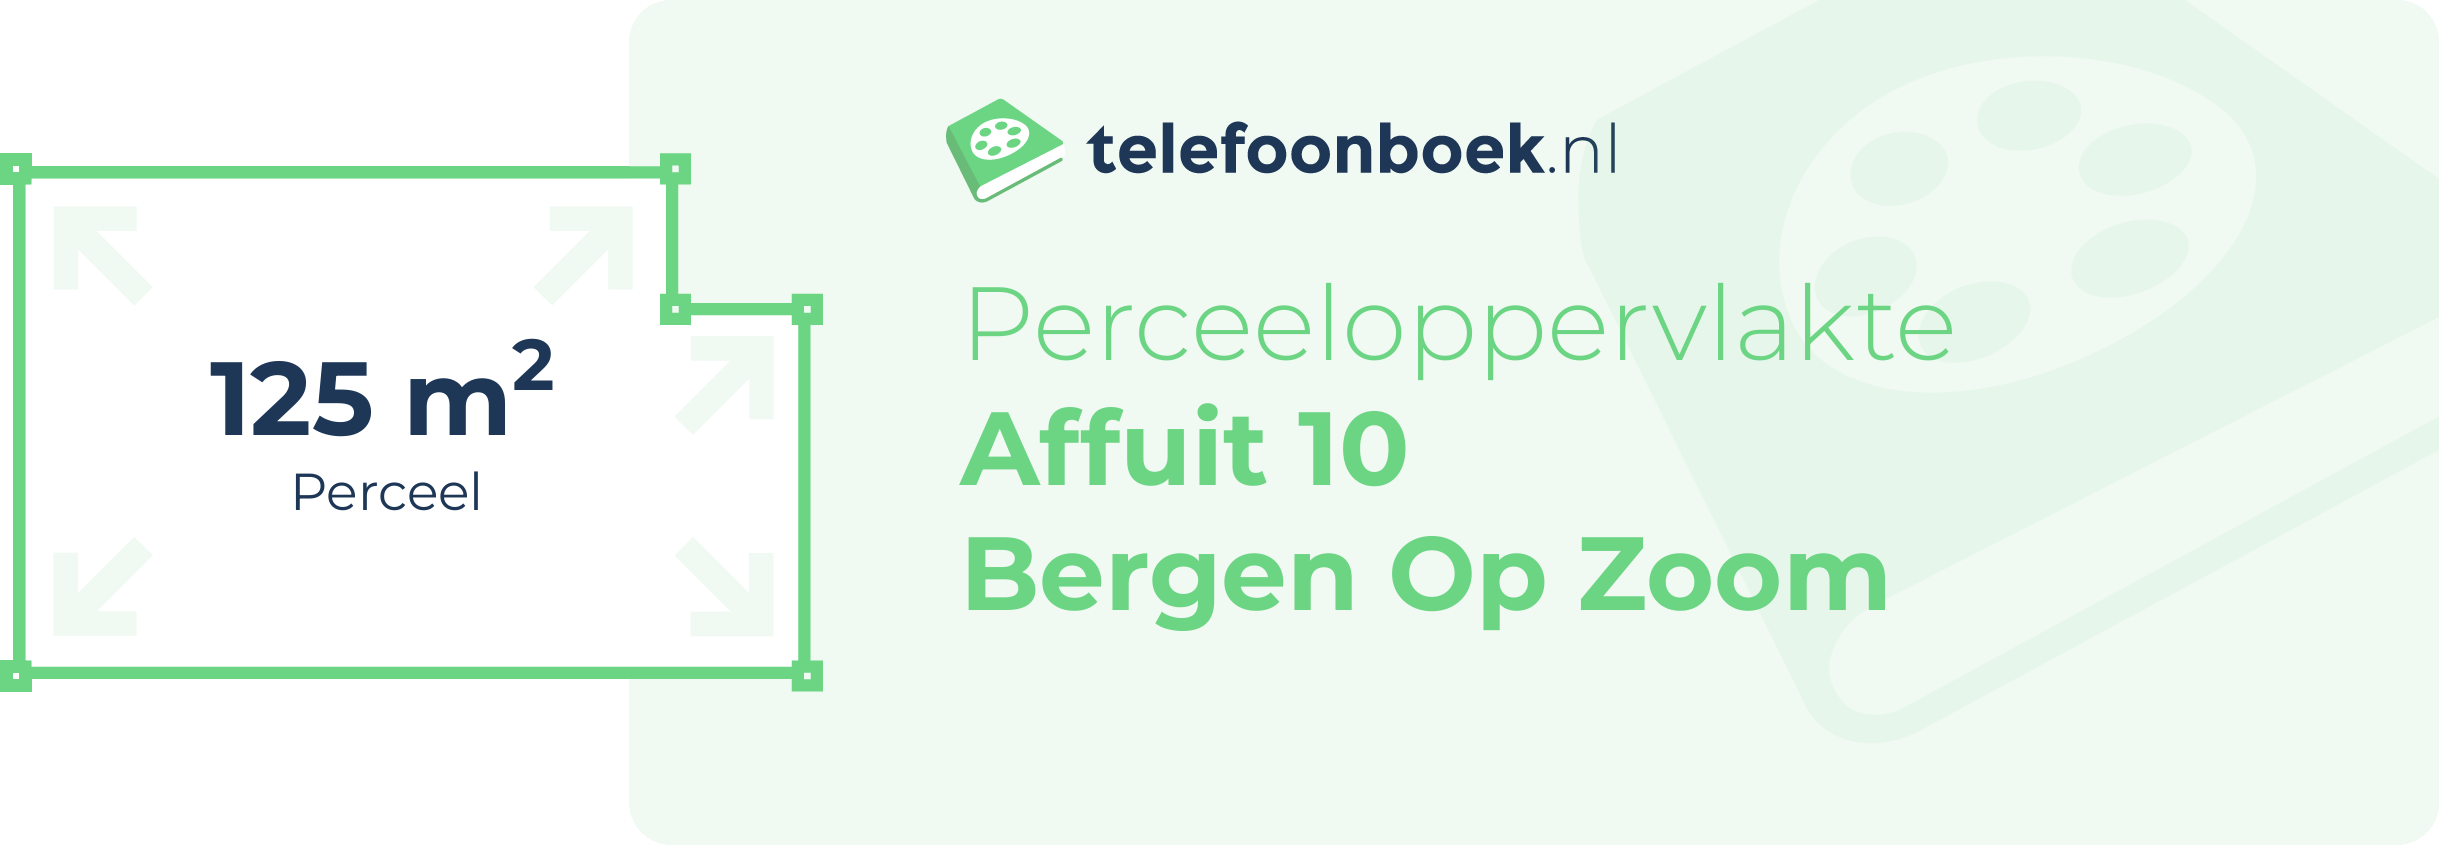 Perceeloppervlakte Affuit 10 Bergen Op Zoom